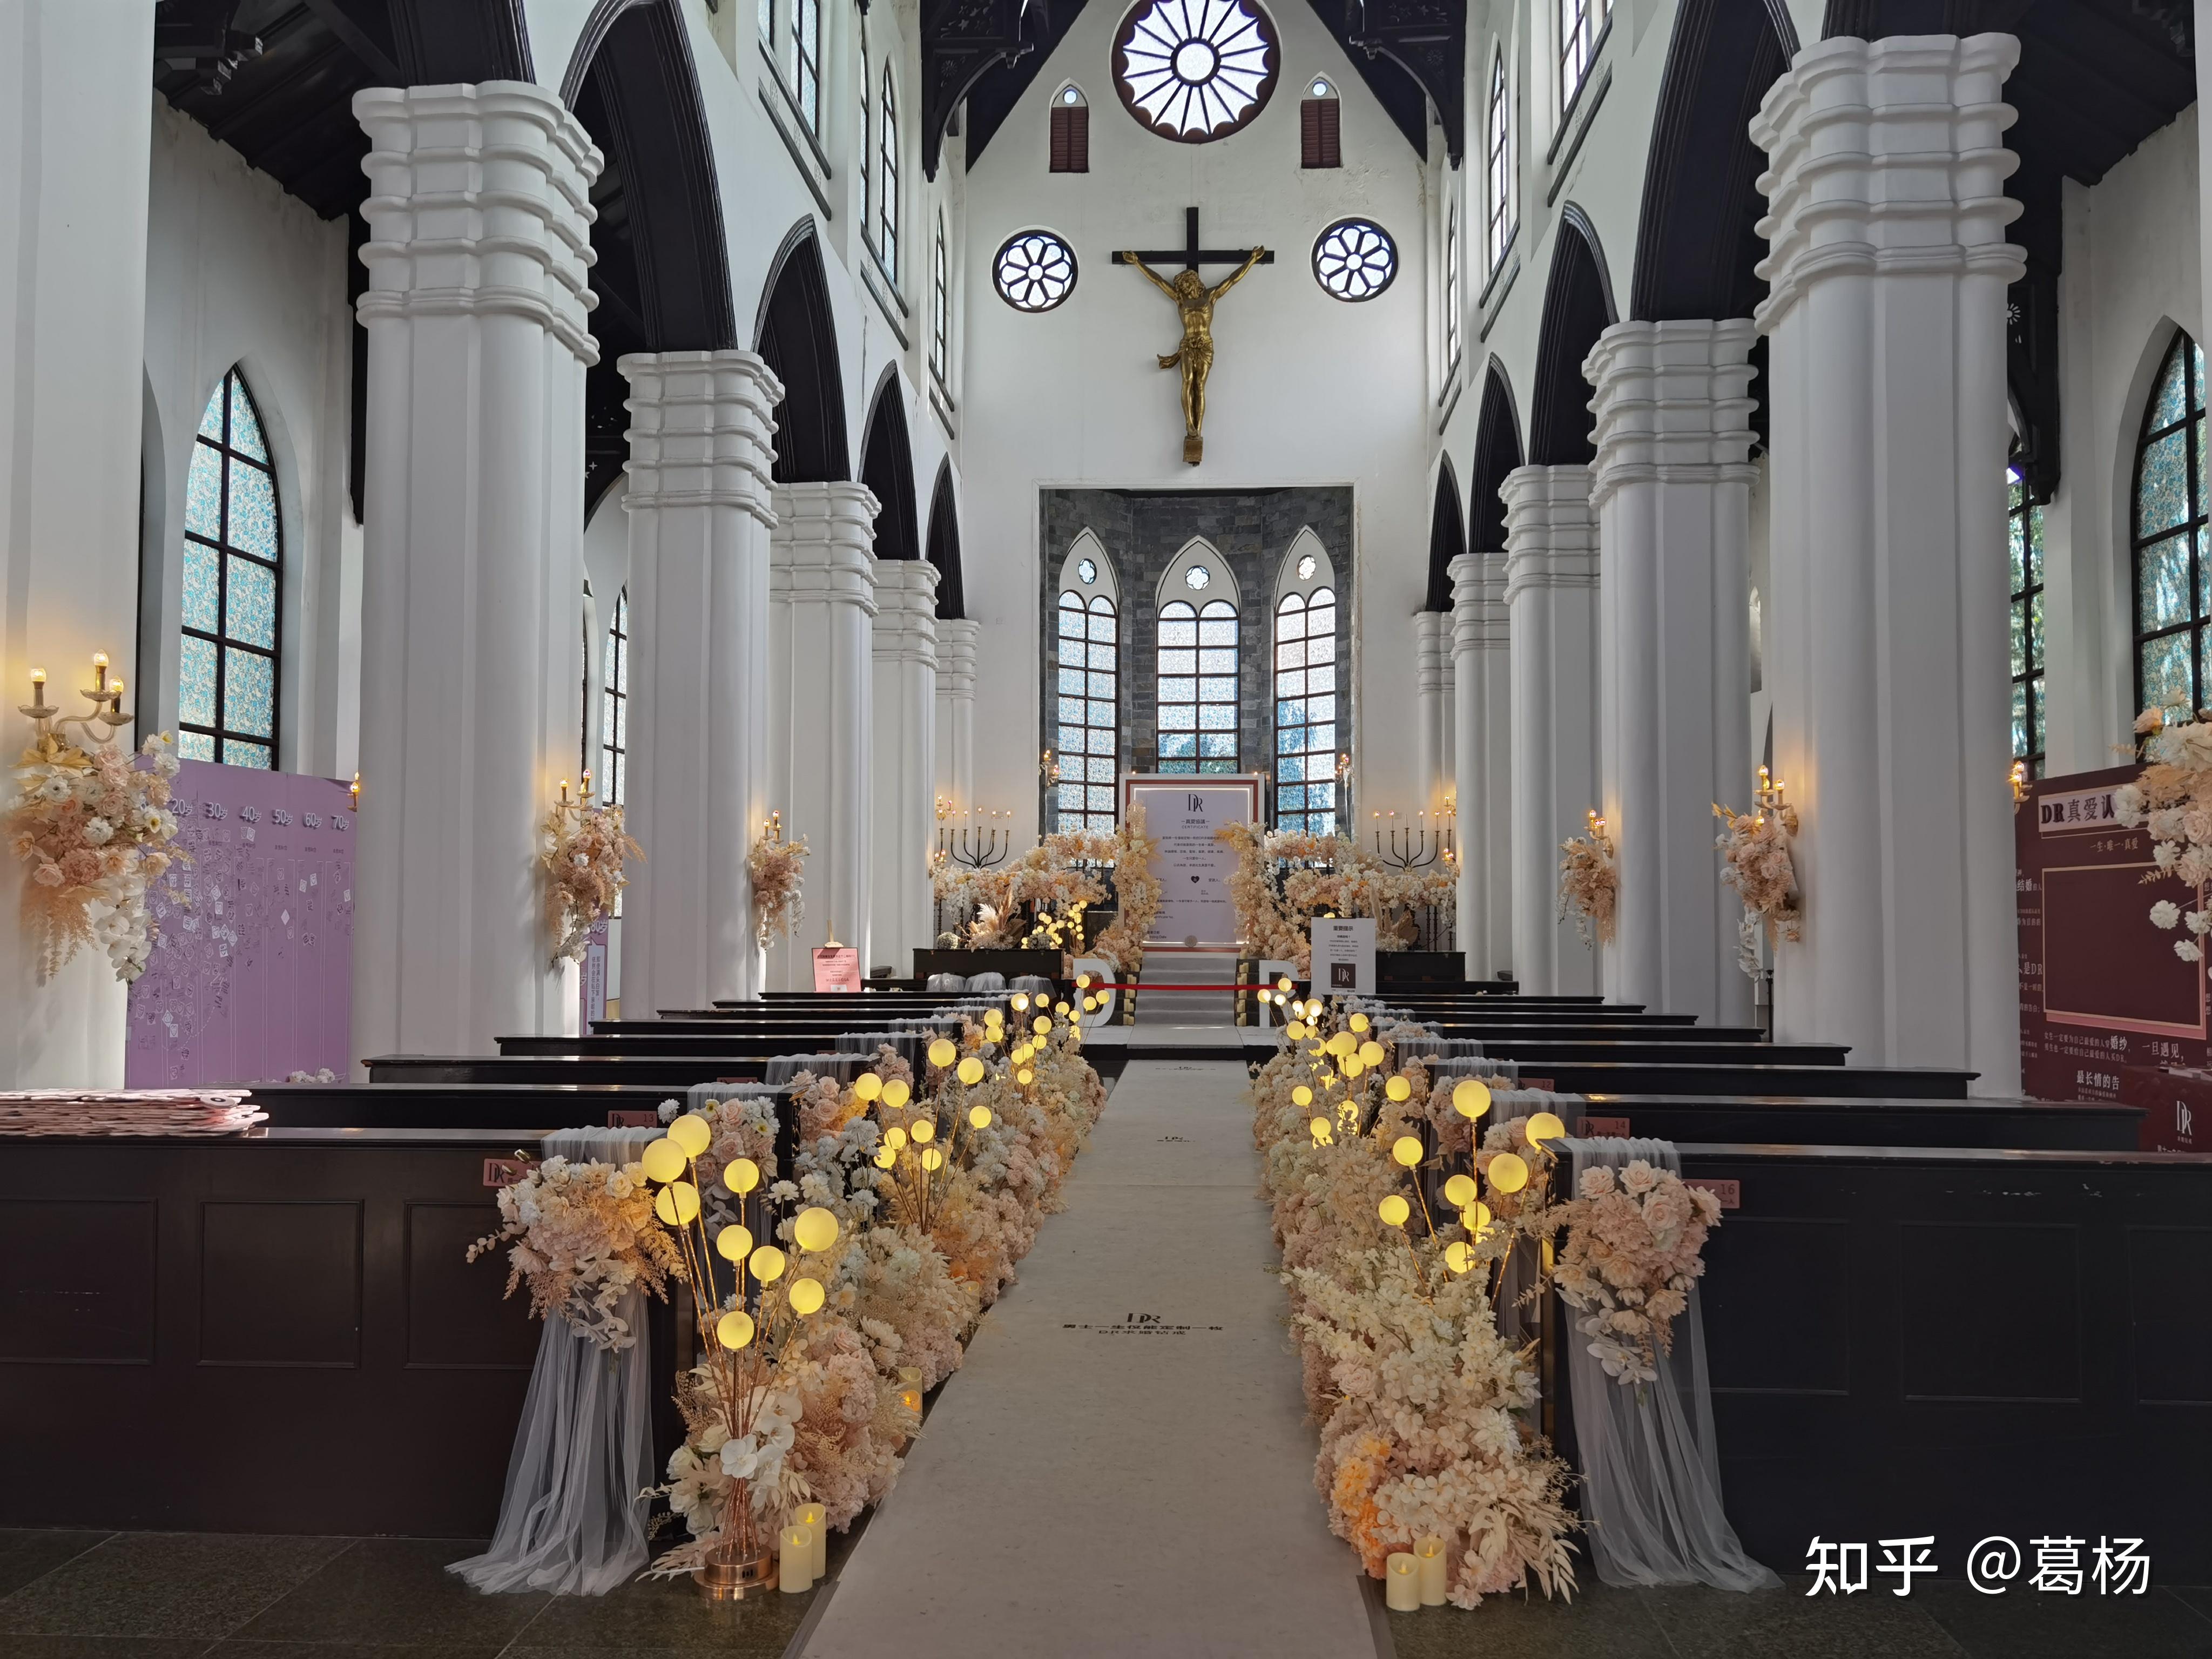 如果你在深圳,也希望在教堂里策划自己的求婚和结婚仪式,可以考虑试一